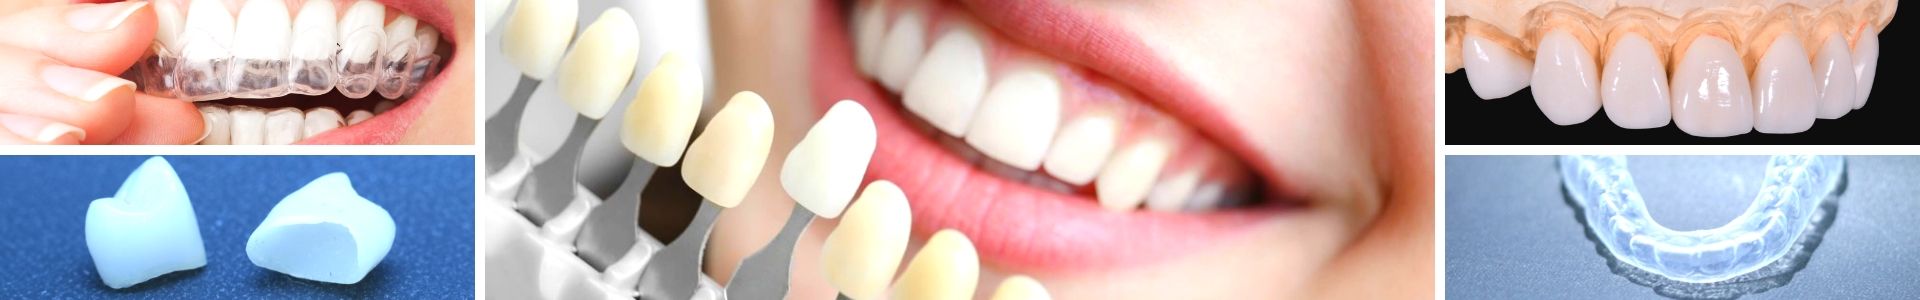 Técnicas de Estética Dental | 5 formas de dar um UP no seu SORRISO!